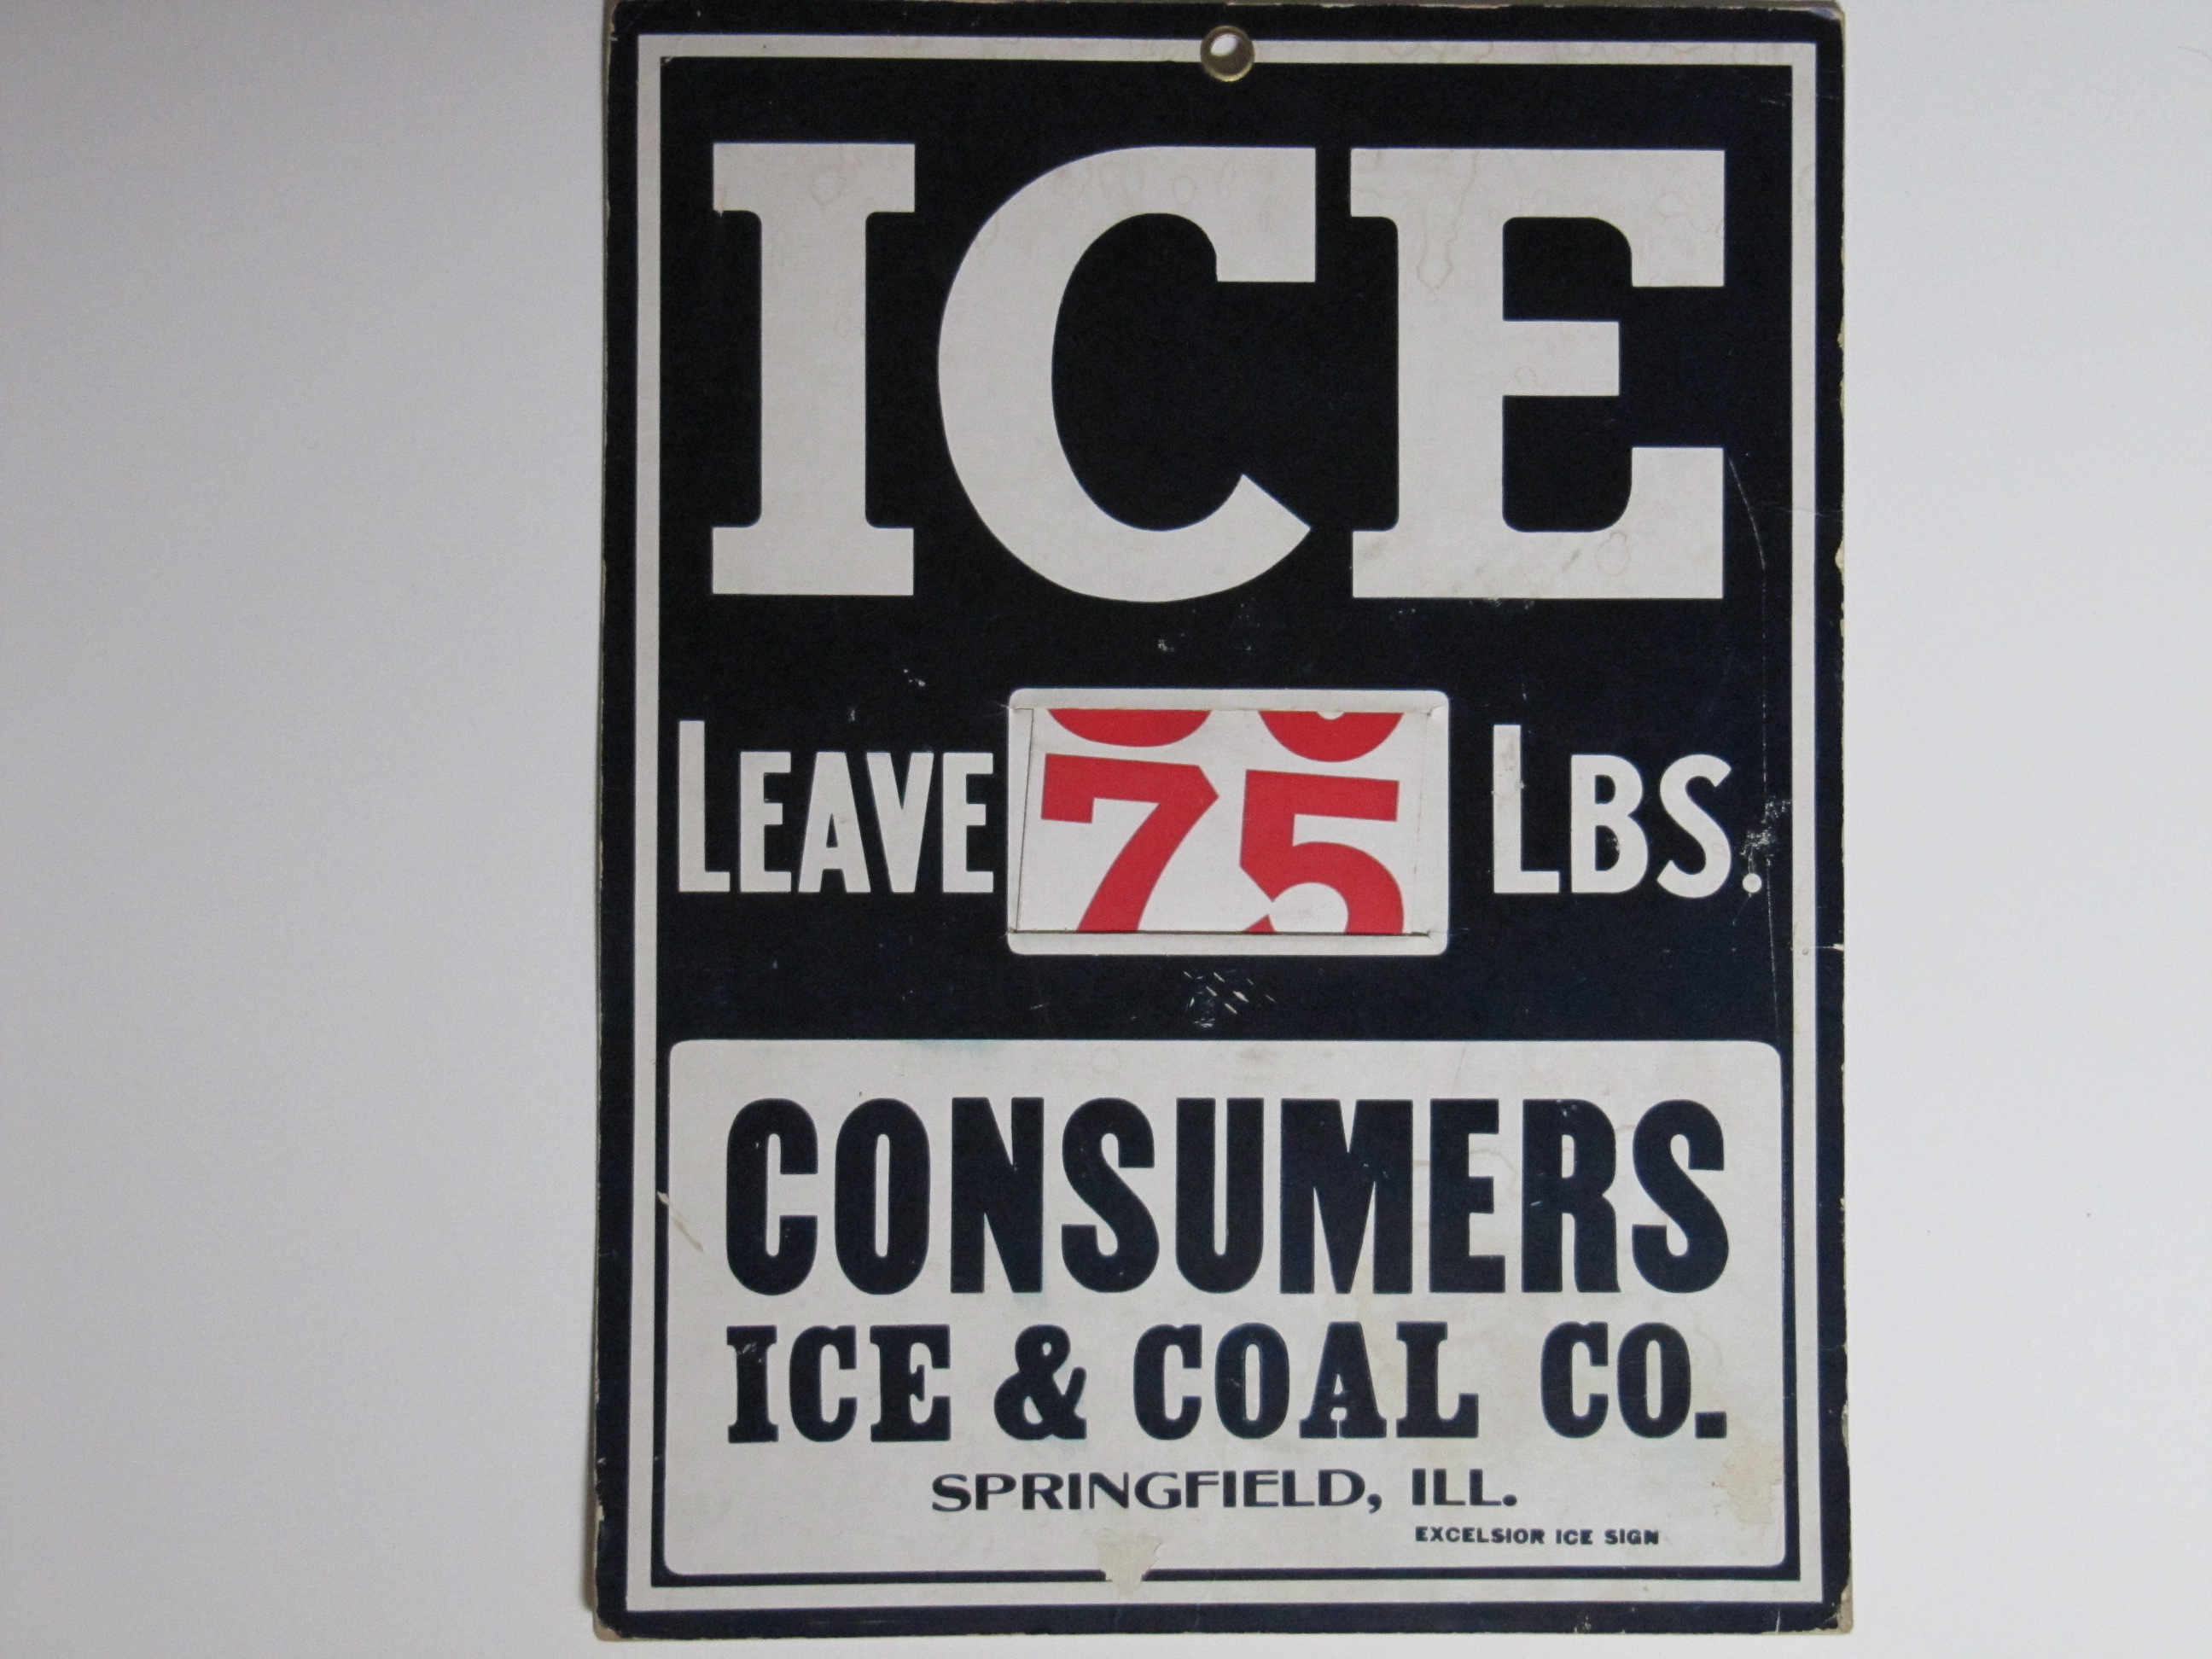 Consumers Ice